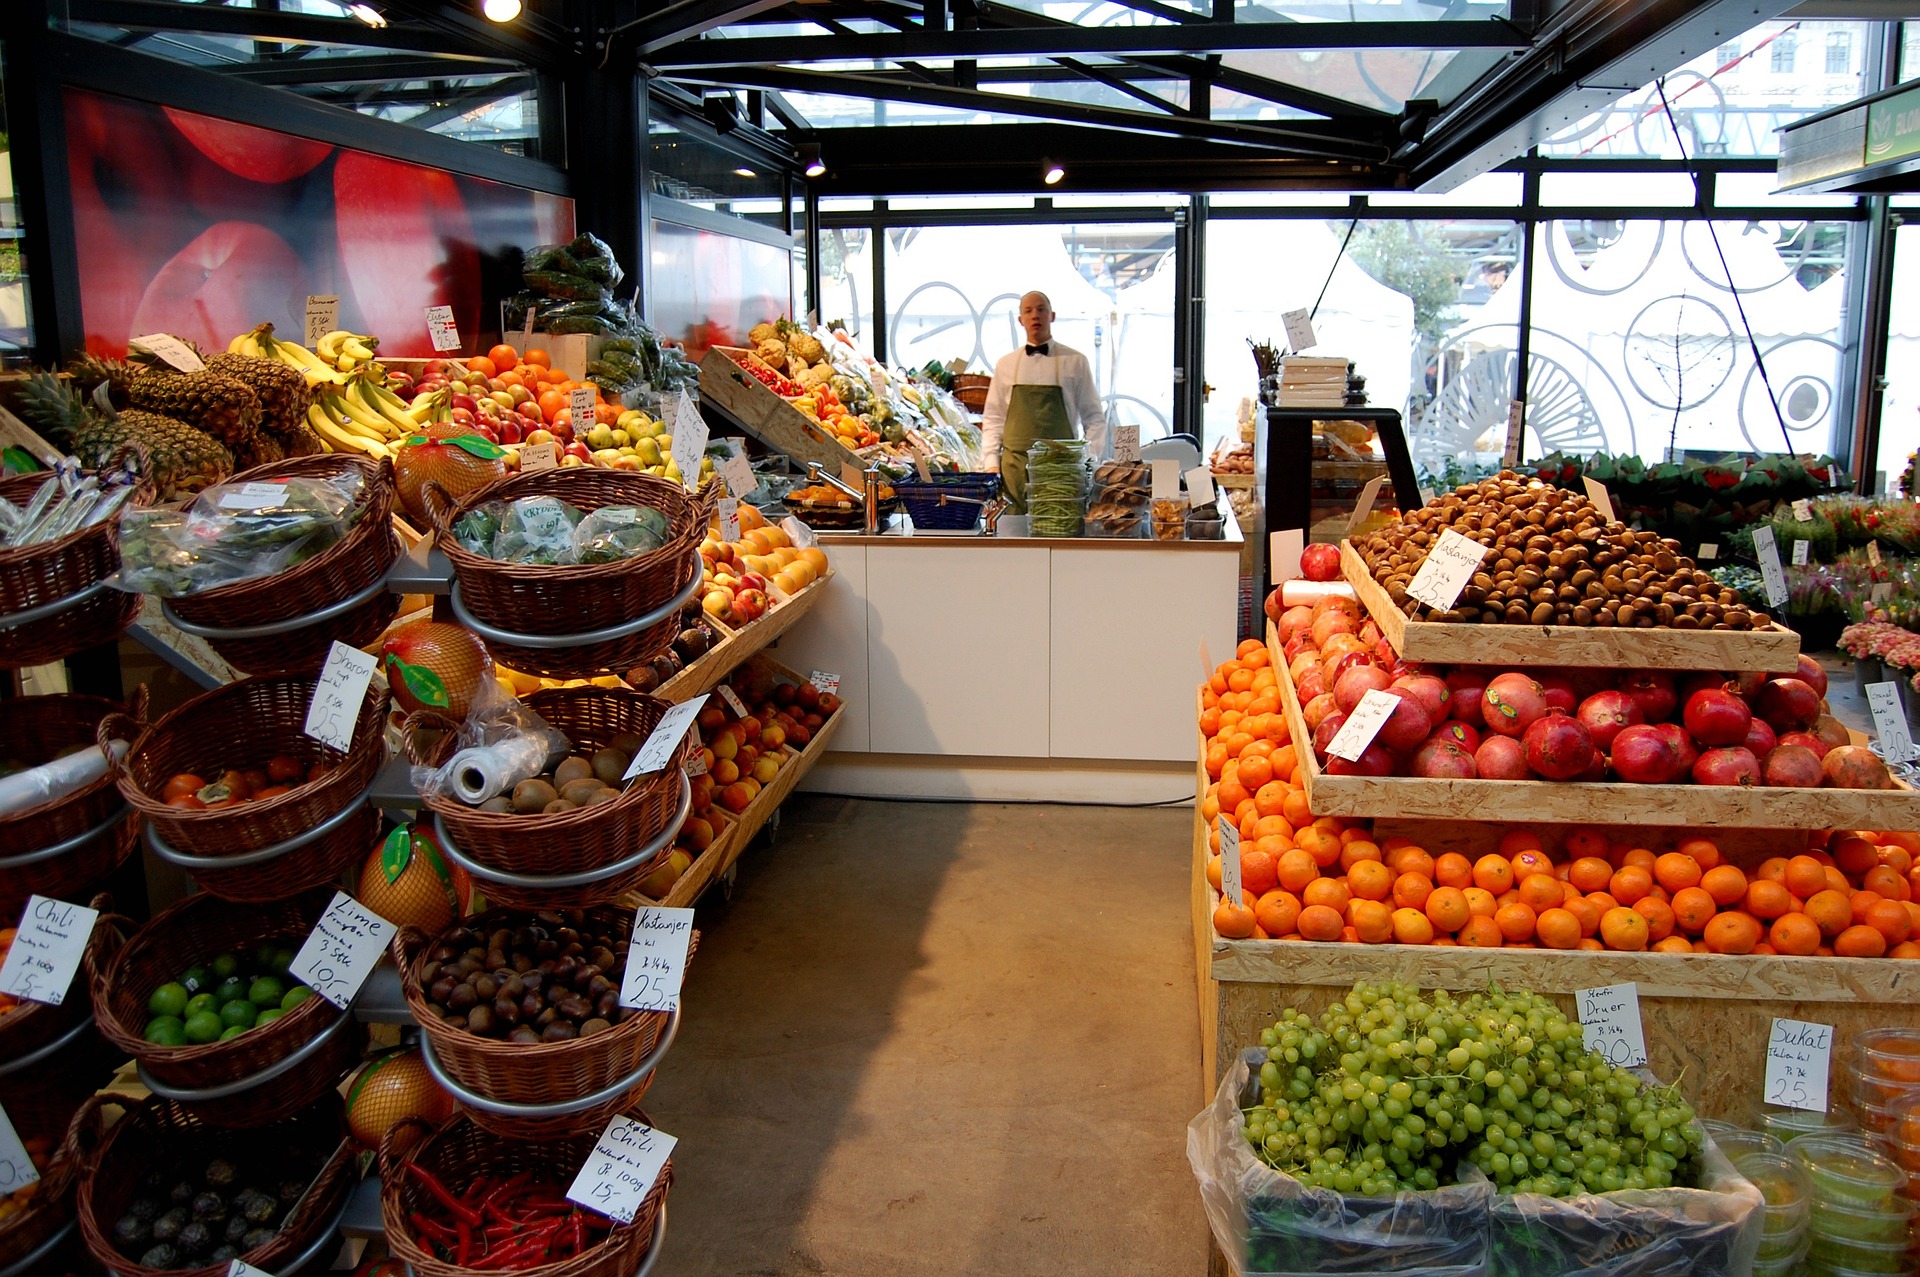 Postoje tri dobra razloga da ne kupujete već narezano voće i povrće u supermarketu